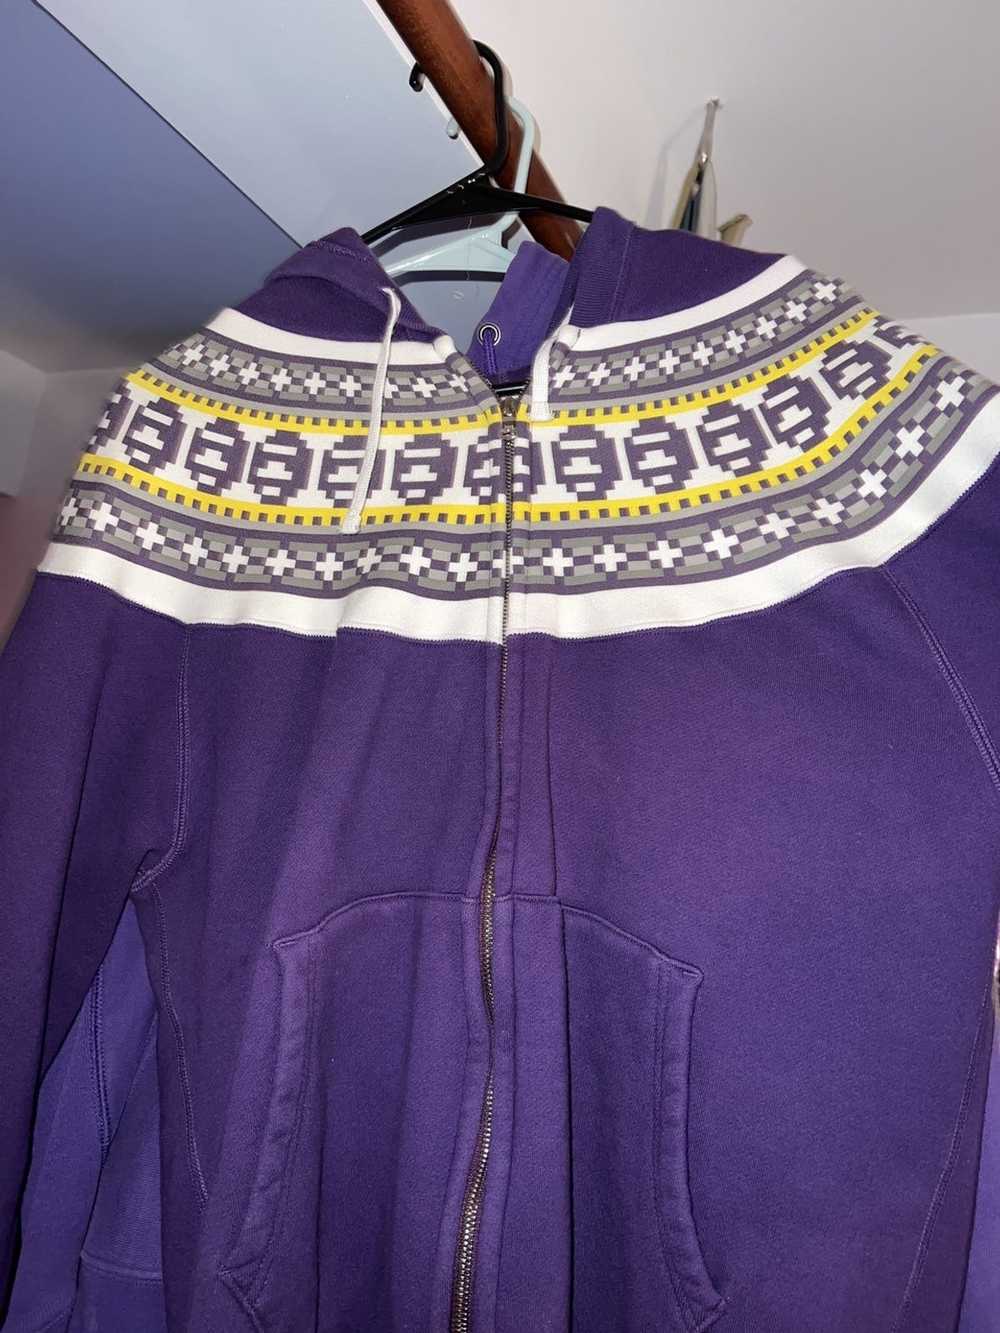 Bape vintage purple bape hoodie - image 6